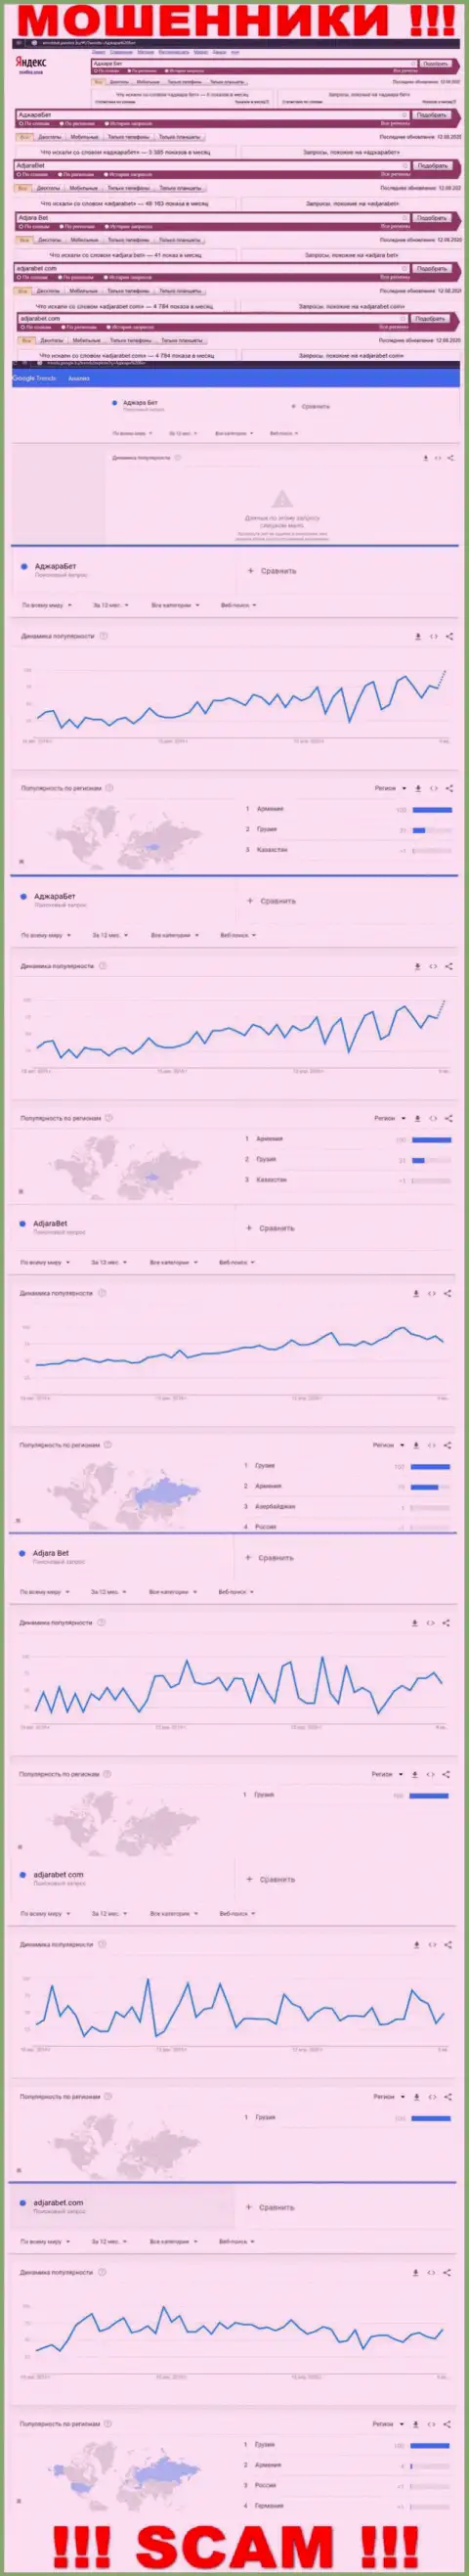 Статистические показатели количества поисковых запросов во всемирной паутине по мошенникам АджараБет